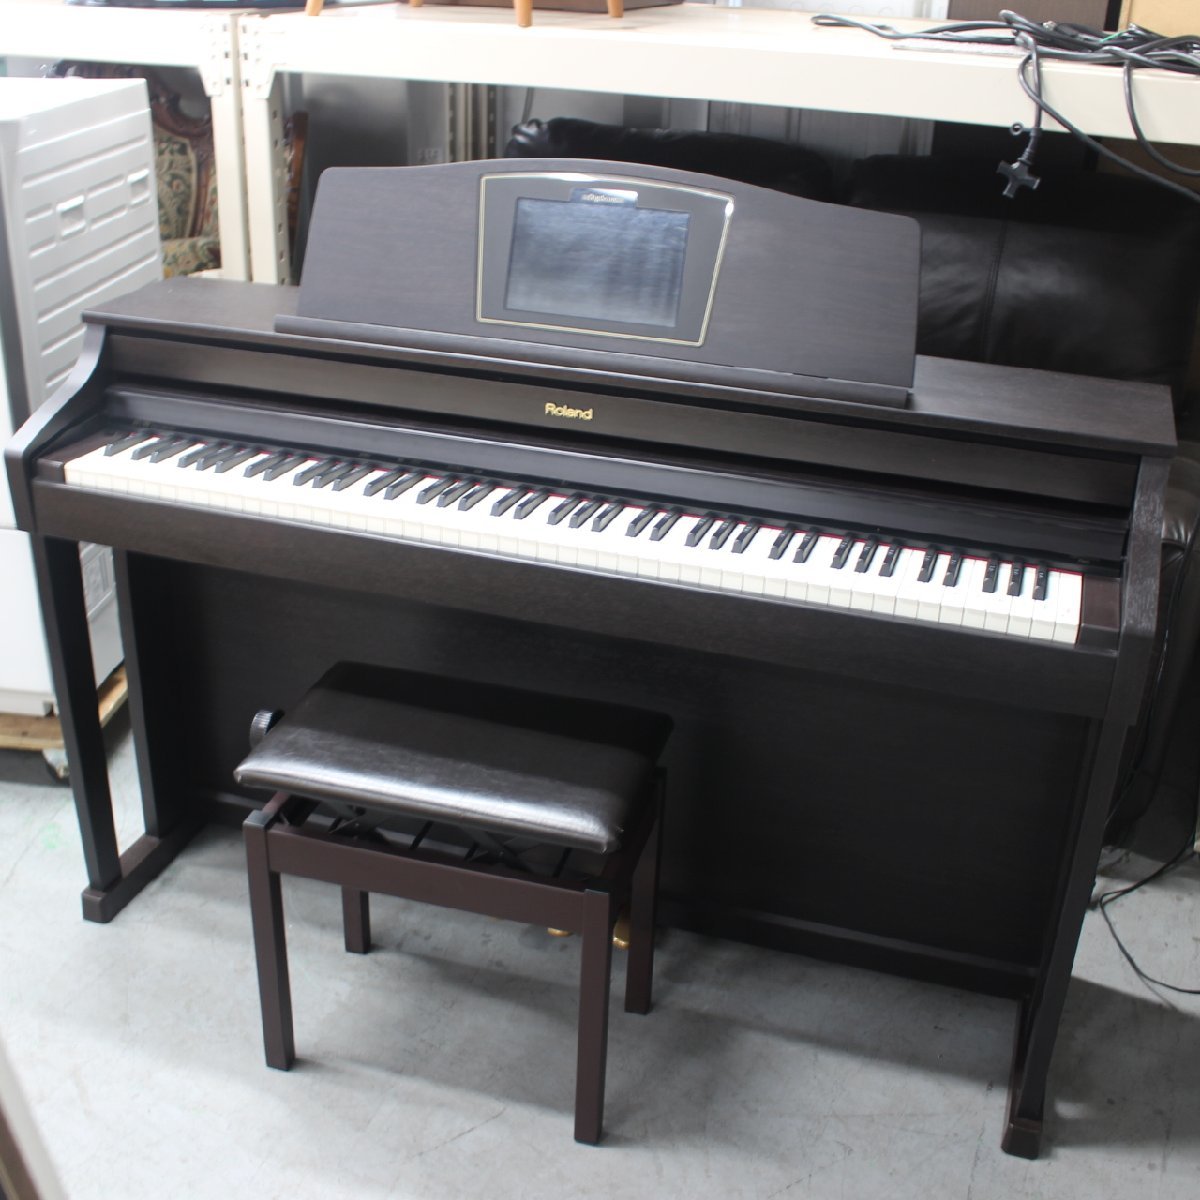 横浜市戸塚区にて ローランド 電子ピアノ HPi-50 2014年製 を出張買取させて頂きました。